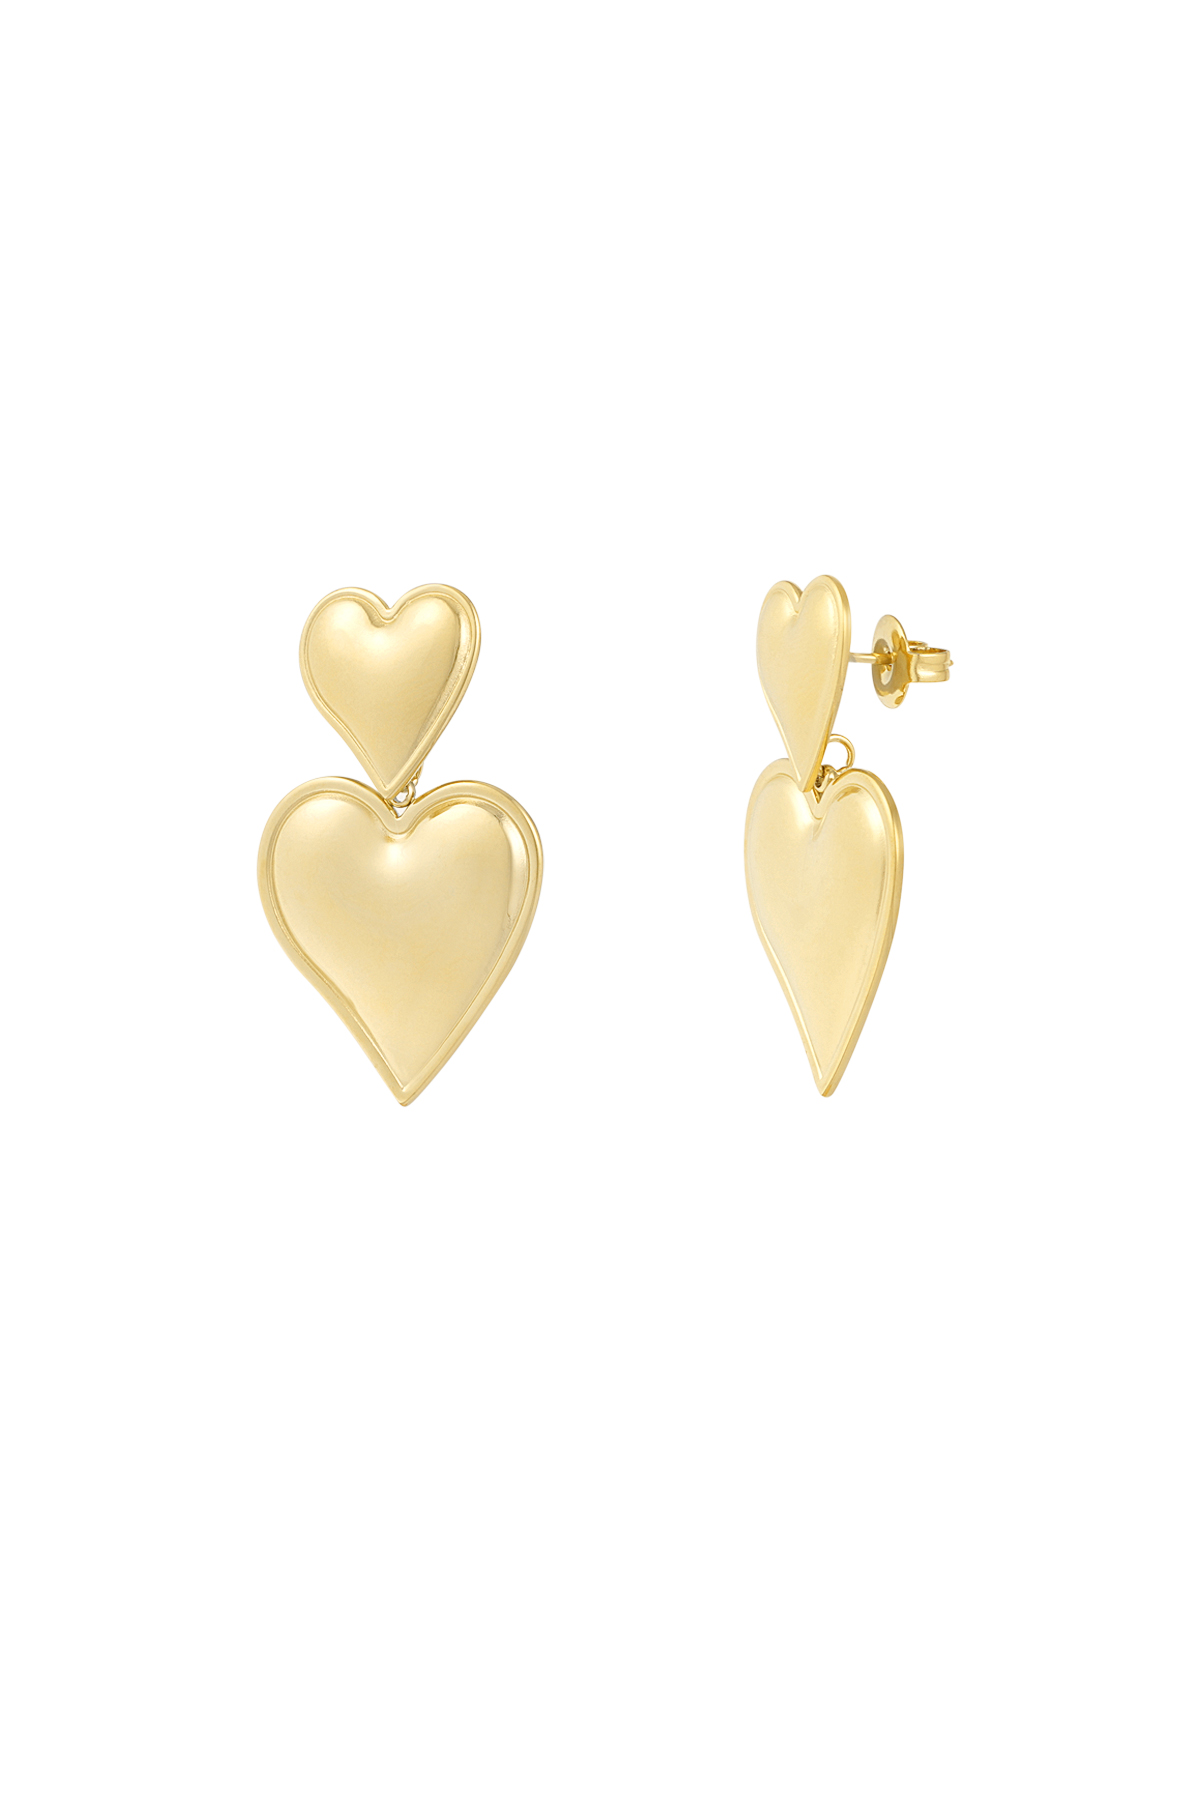 Earrings looking good - gold